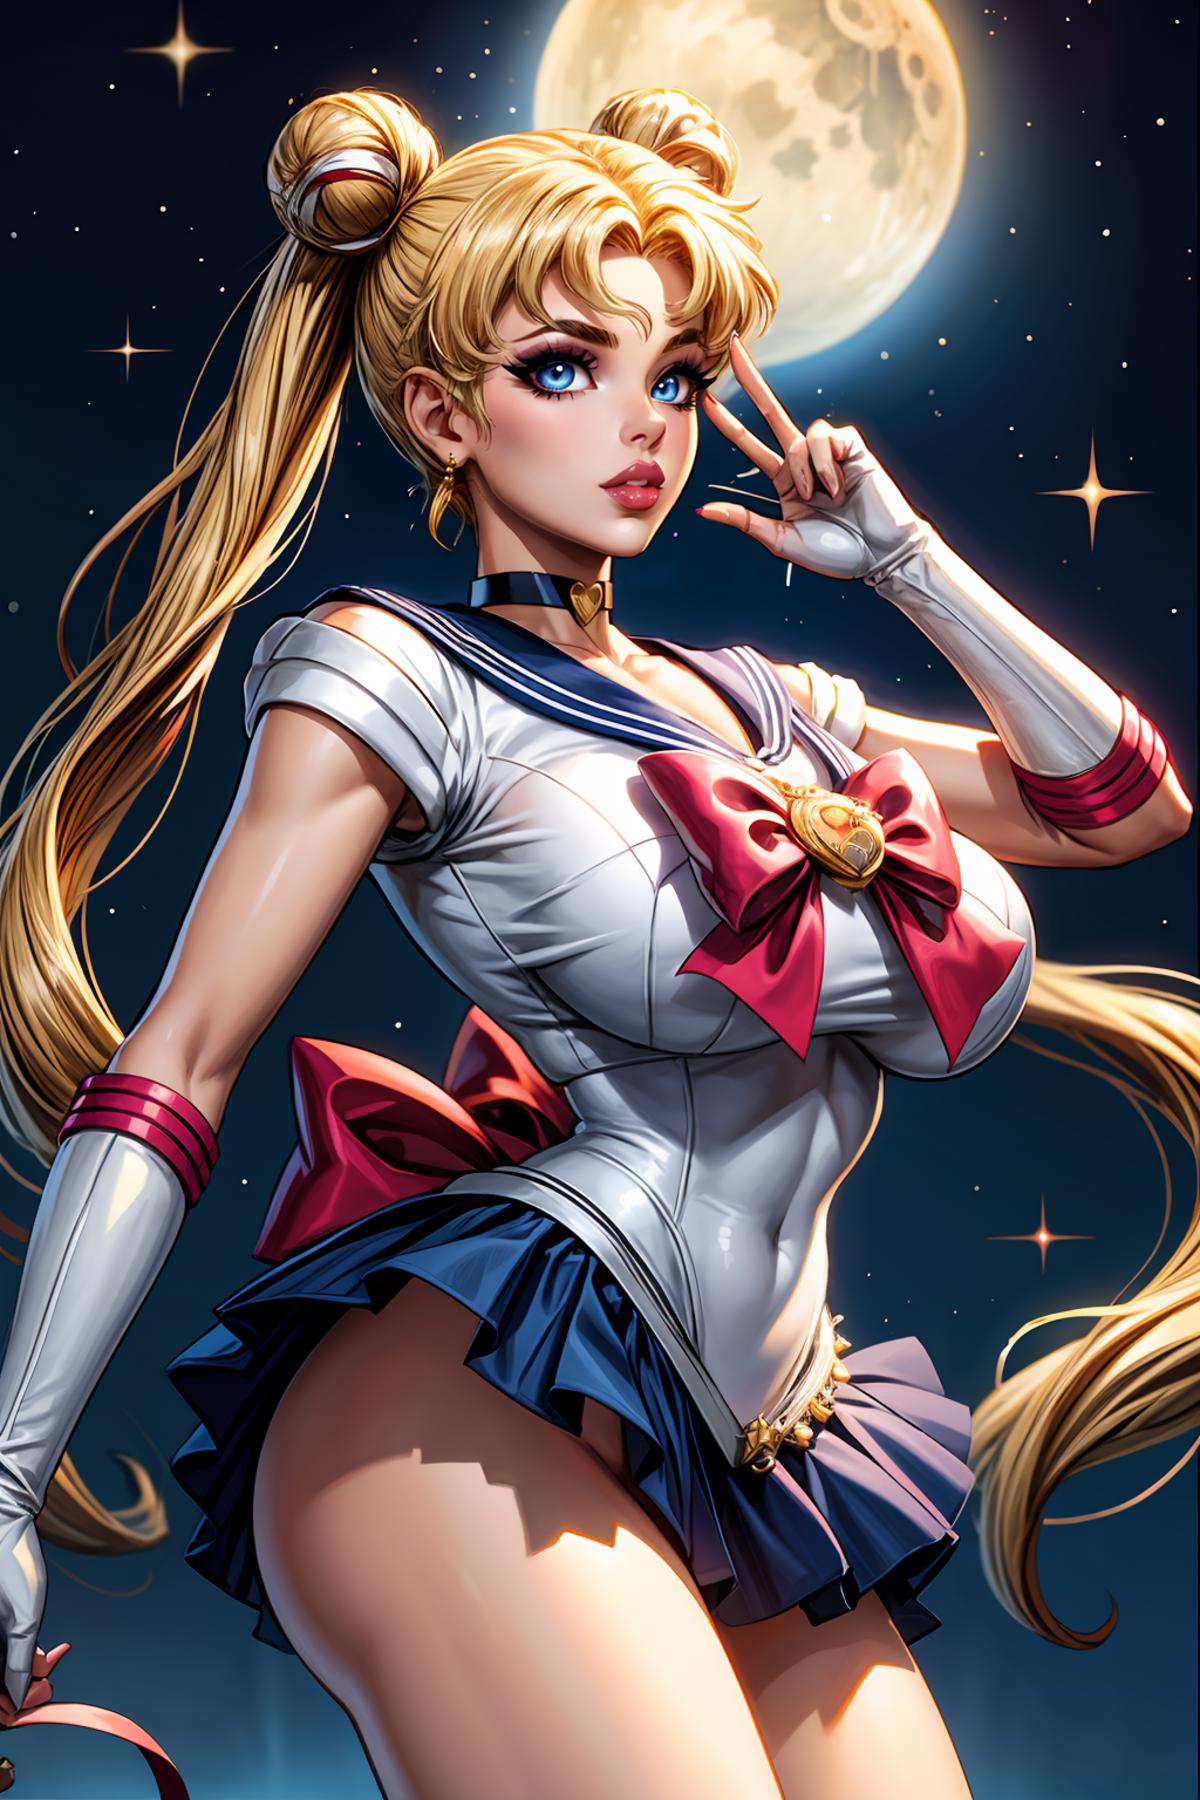 Sailor Moon / Usagi Tsukino (Sailor Moon) - Lora image by DrPibb